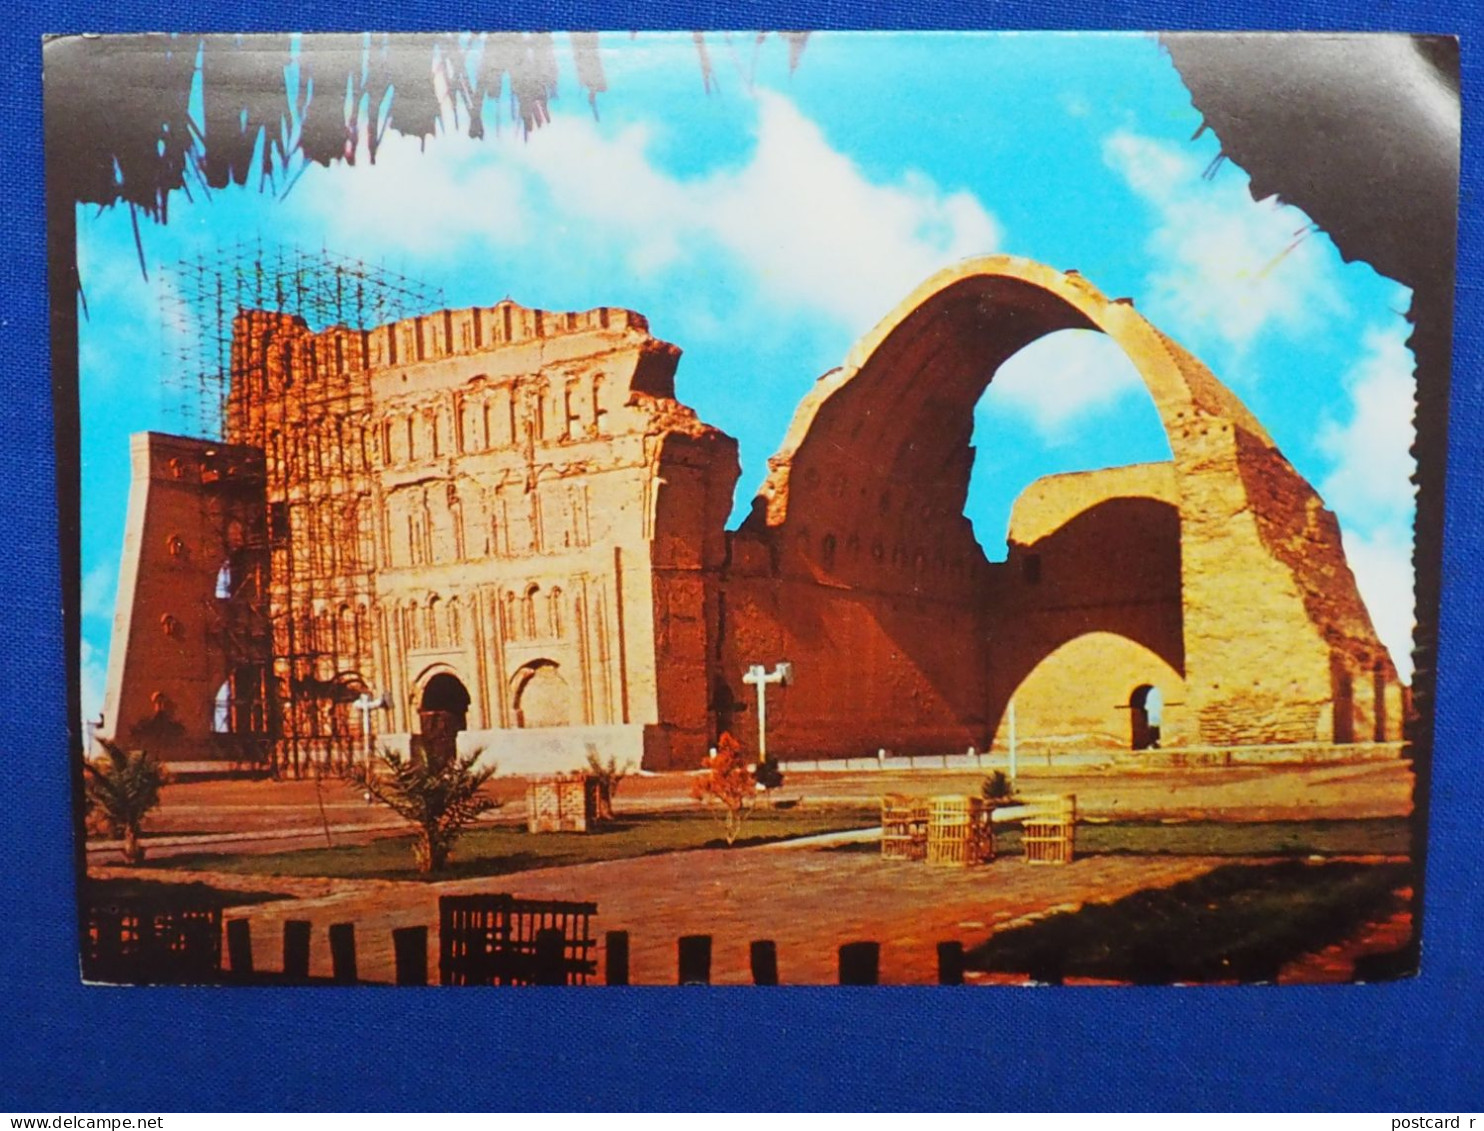 Iraq Arch Of Ctesiphon - Salman Pak A 226 - Iraq